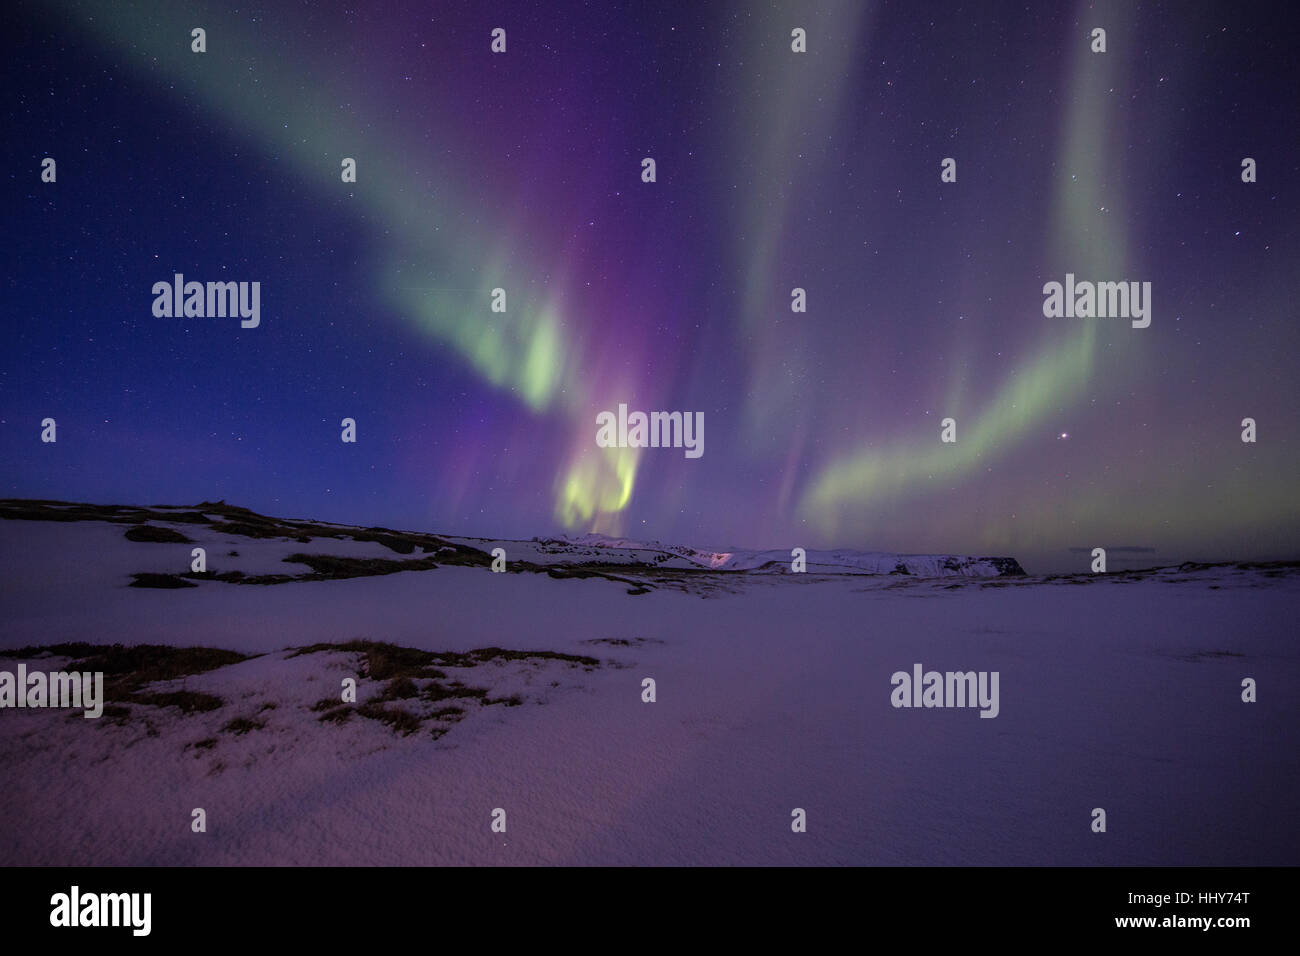 Luci del nord, aurora aurora boreale, esposizione di notte, il mare, il cielo, Islanda, nord, grande nord, inverno, neve, stelle, Cosmos, norw Foto Stock